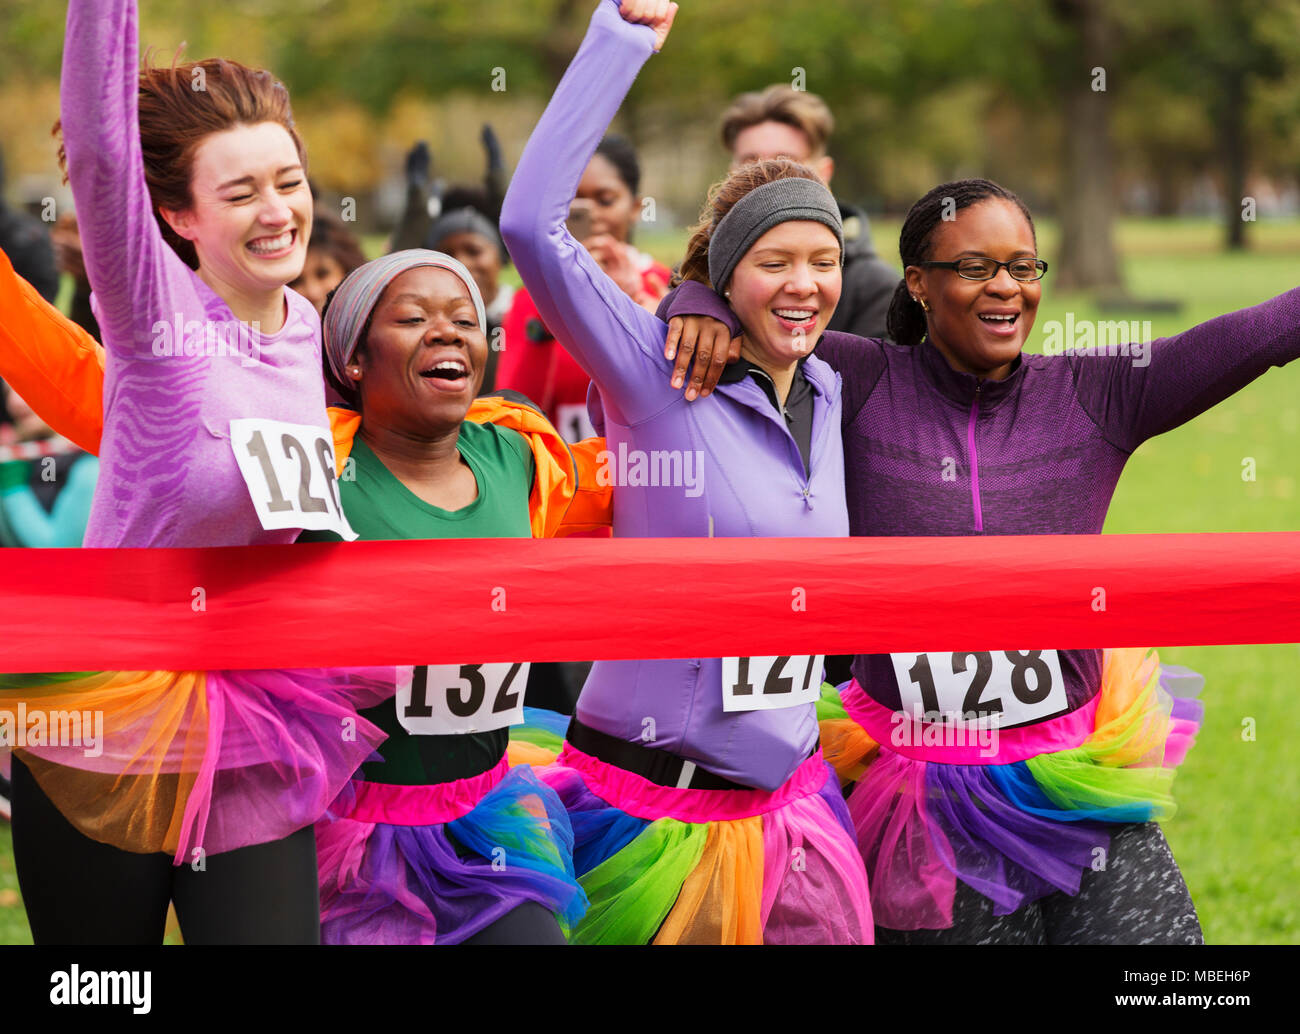 Women friend runners in tutus running, crossing charity run finish line Stock Photo